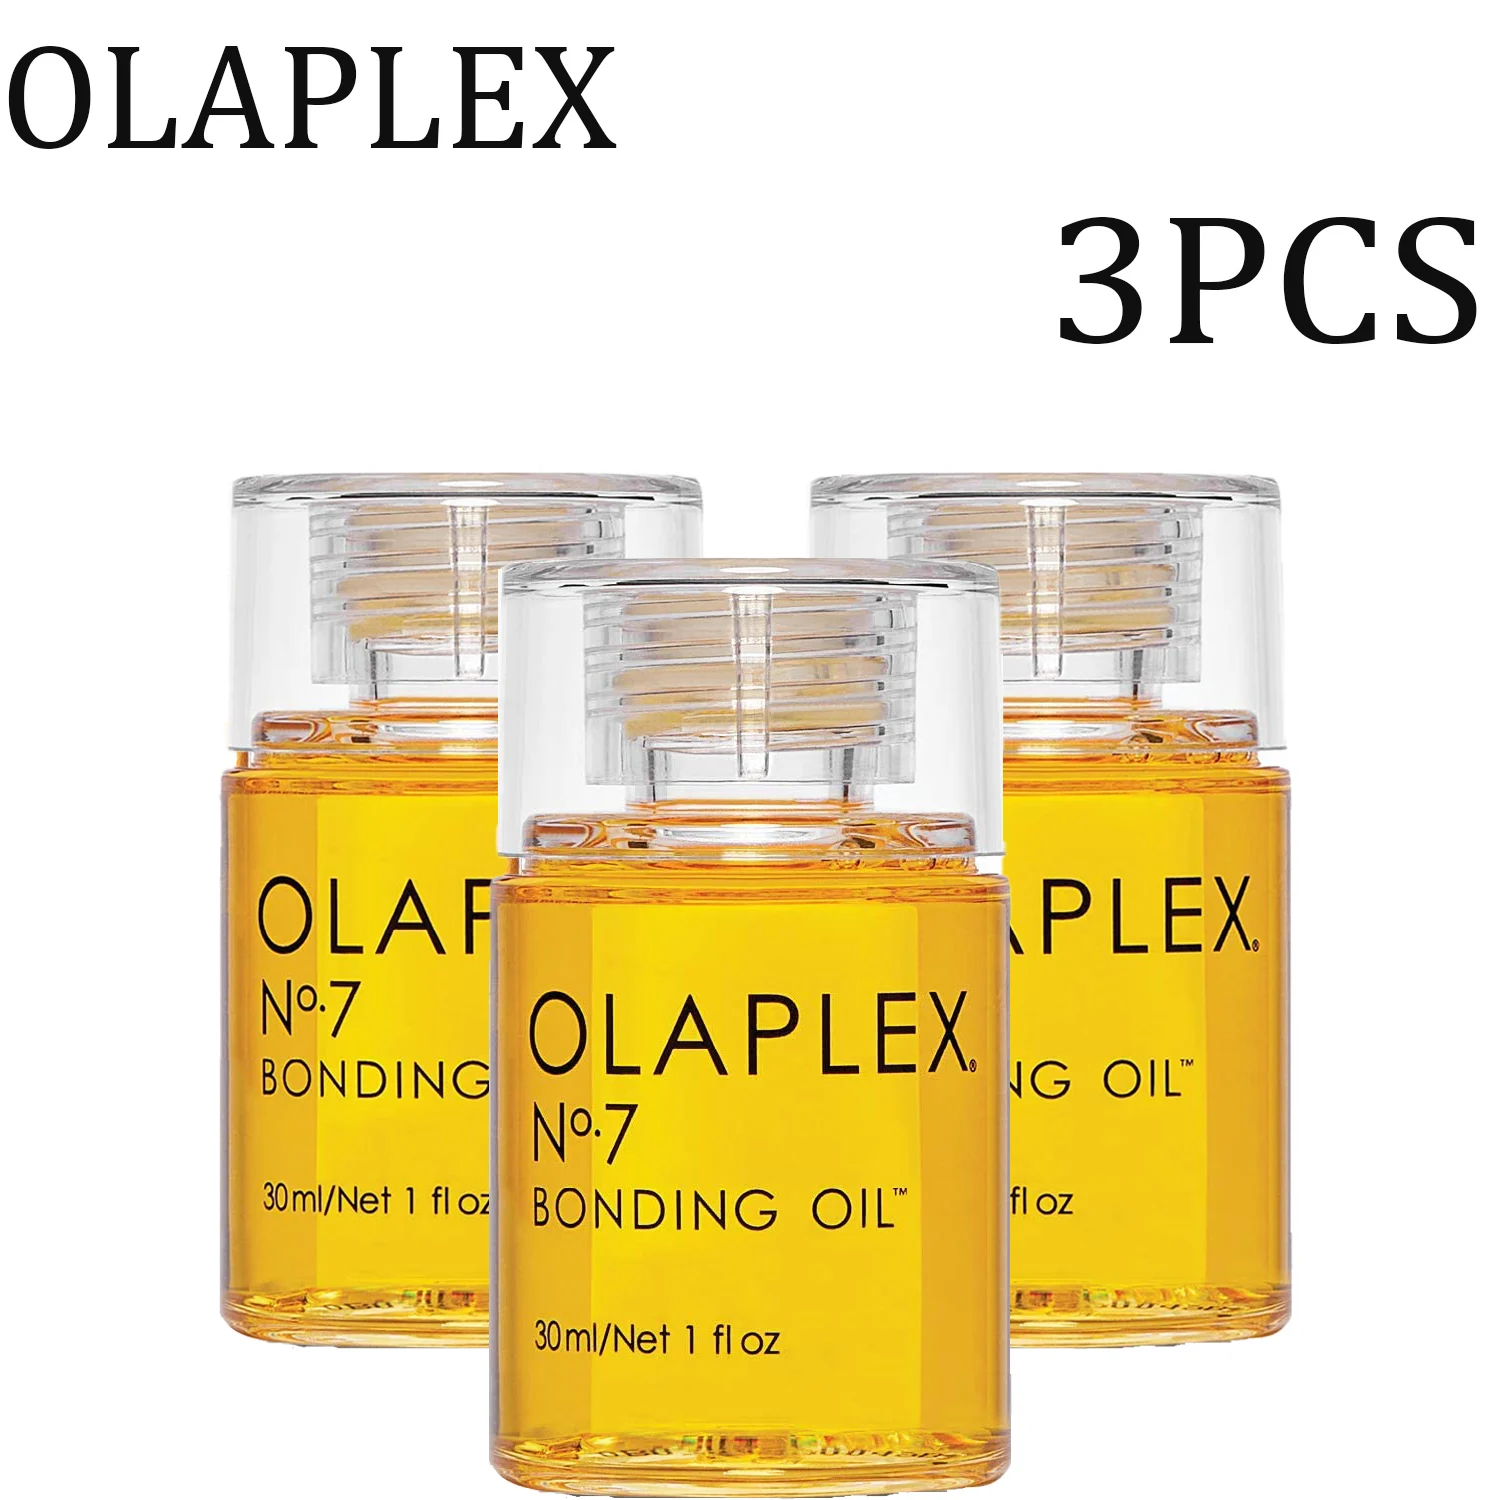 

3 шт. Olaplex Оригинальное соединительное масло № 7 30 мл для восстановления и укрепления всех типов волос, Термостойкое масло